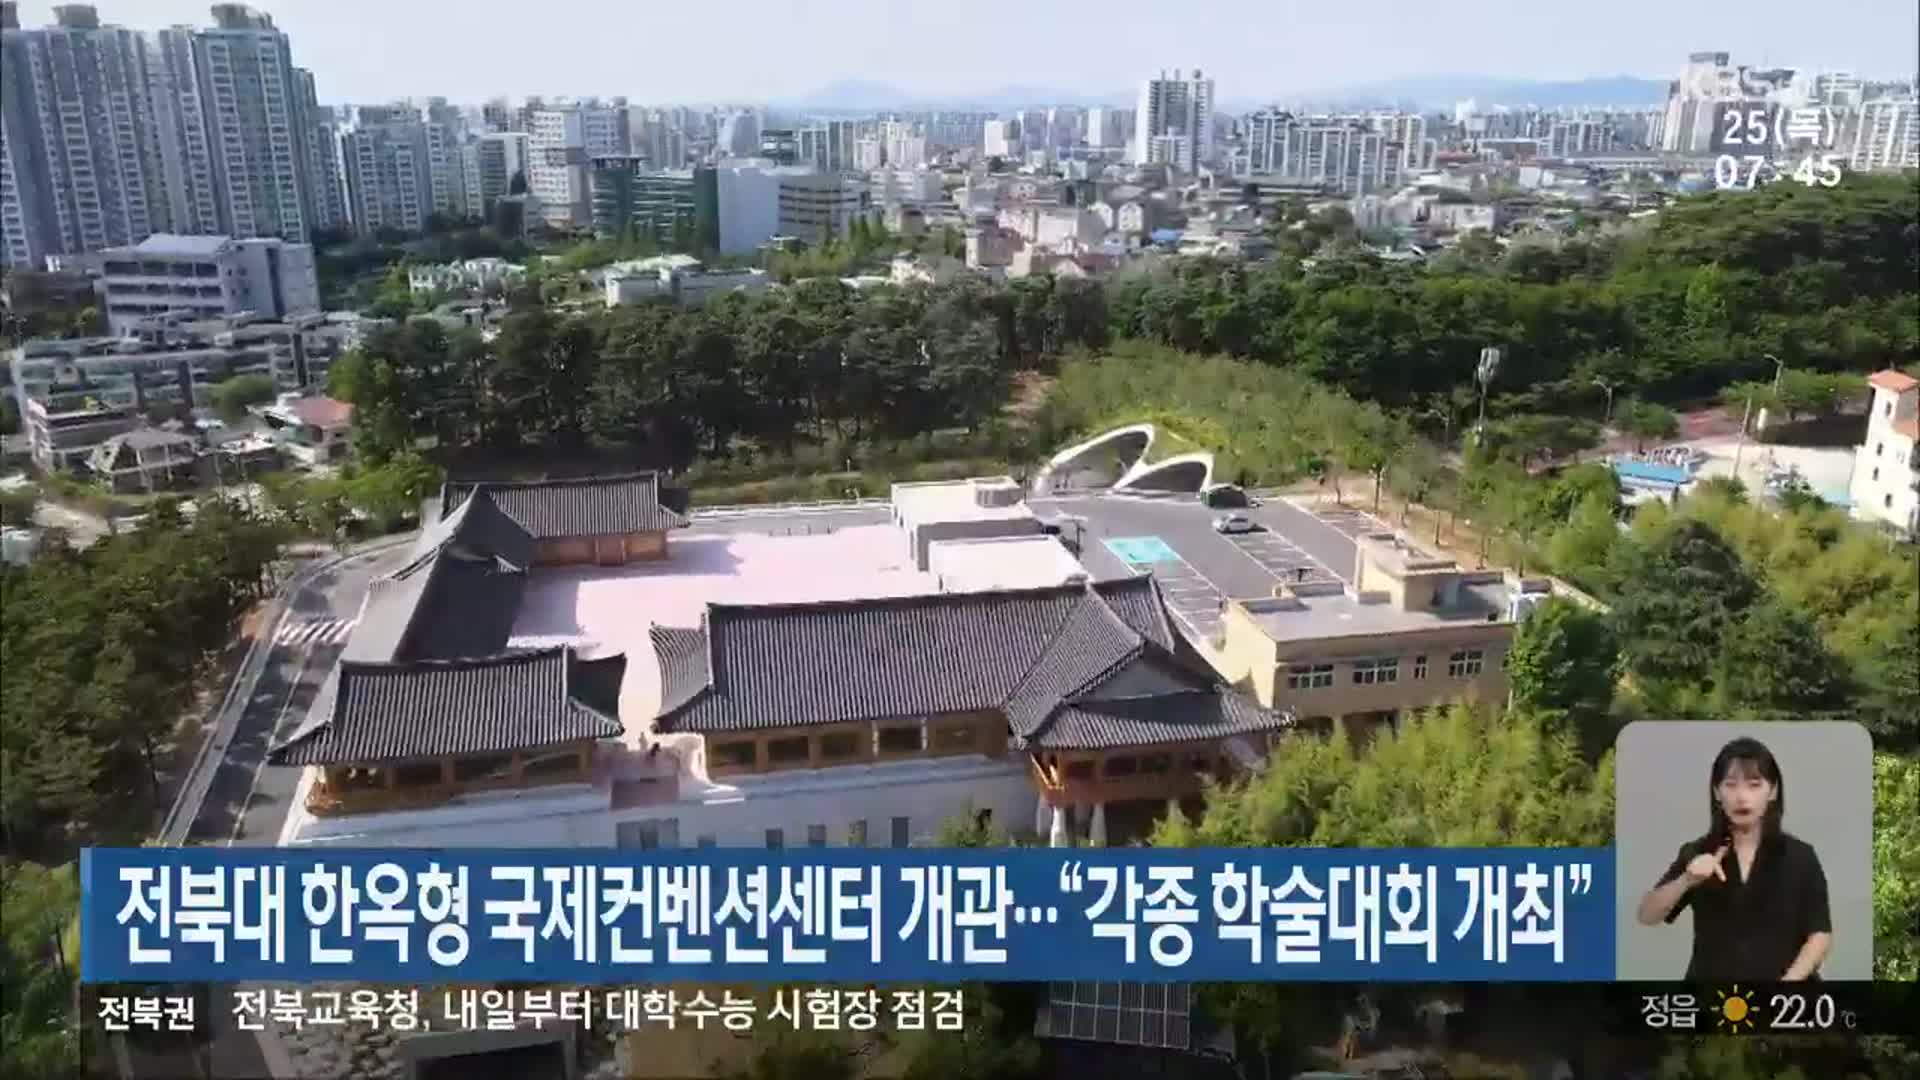 전북대 한옥형 국제컨벤션센터 개관…“각종 학술대회 개최”